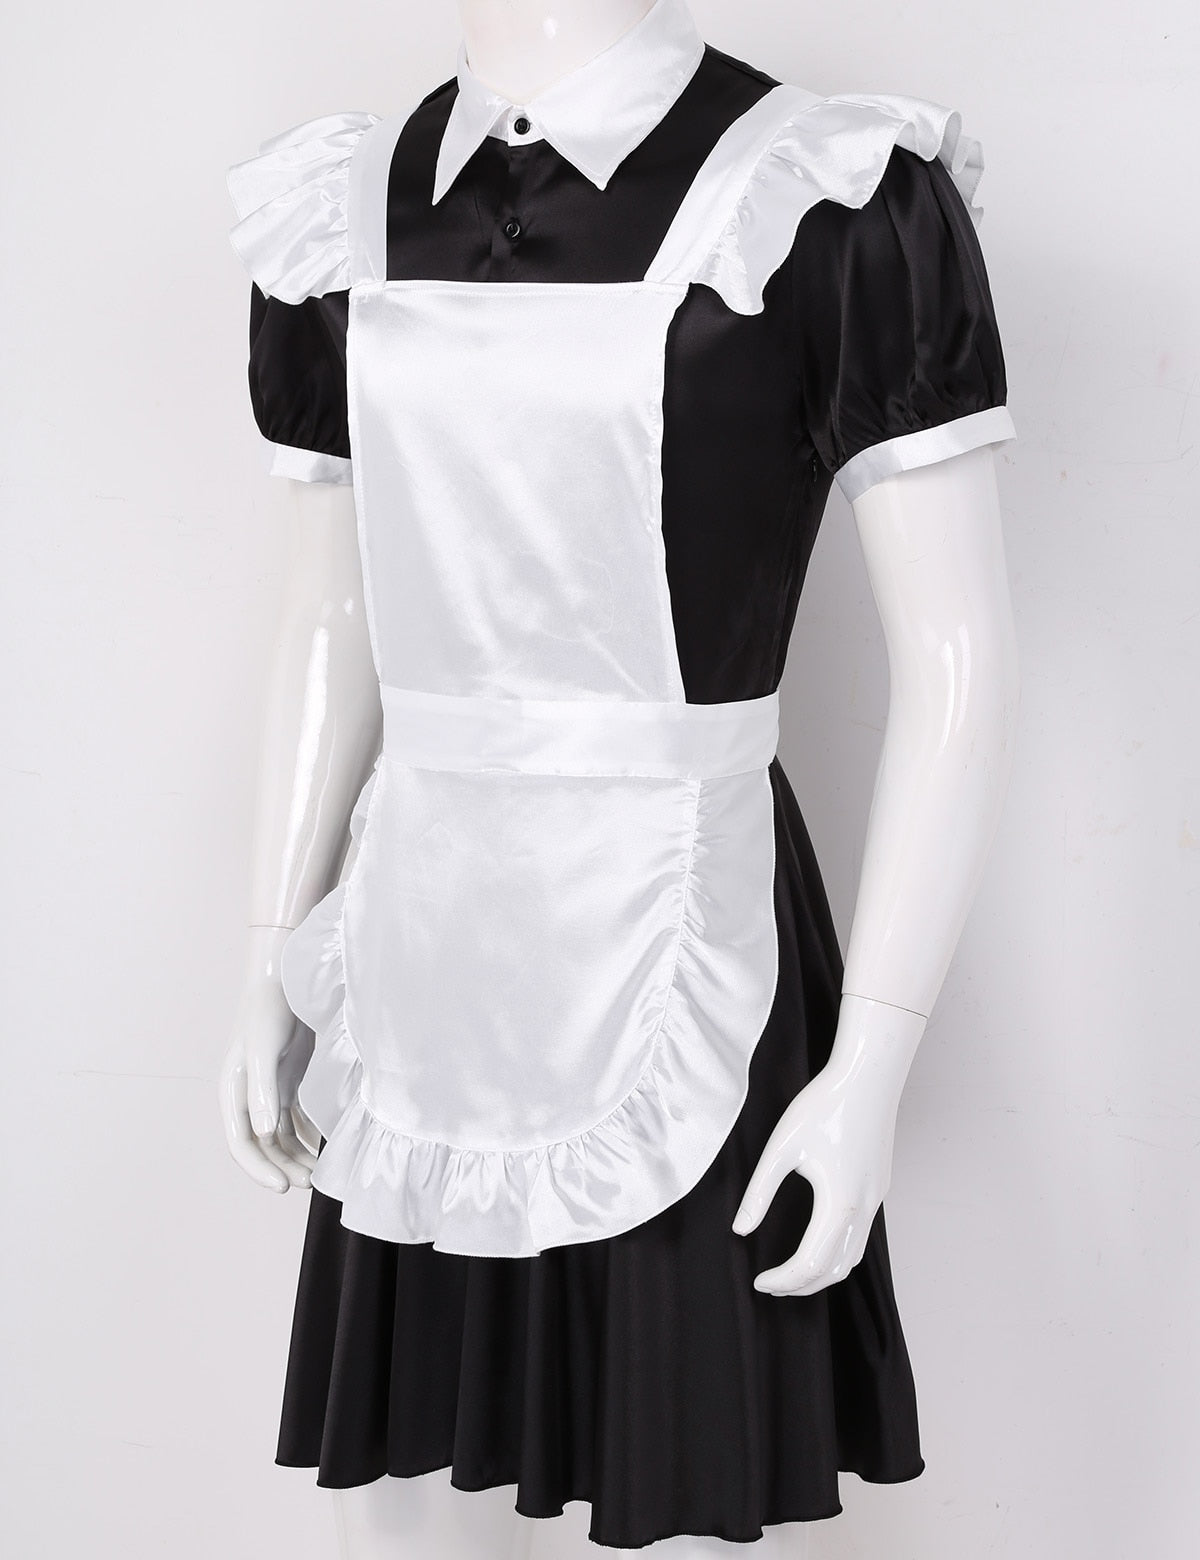 French Maid Sissy Uniform - Sissy Lux